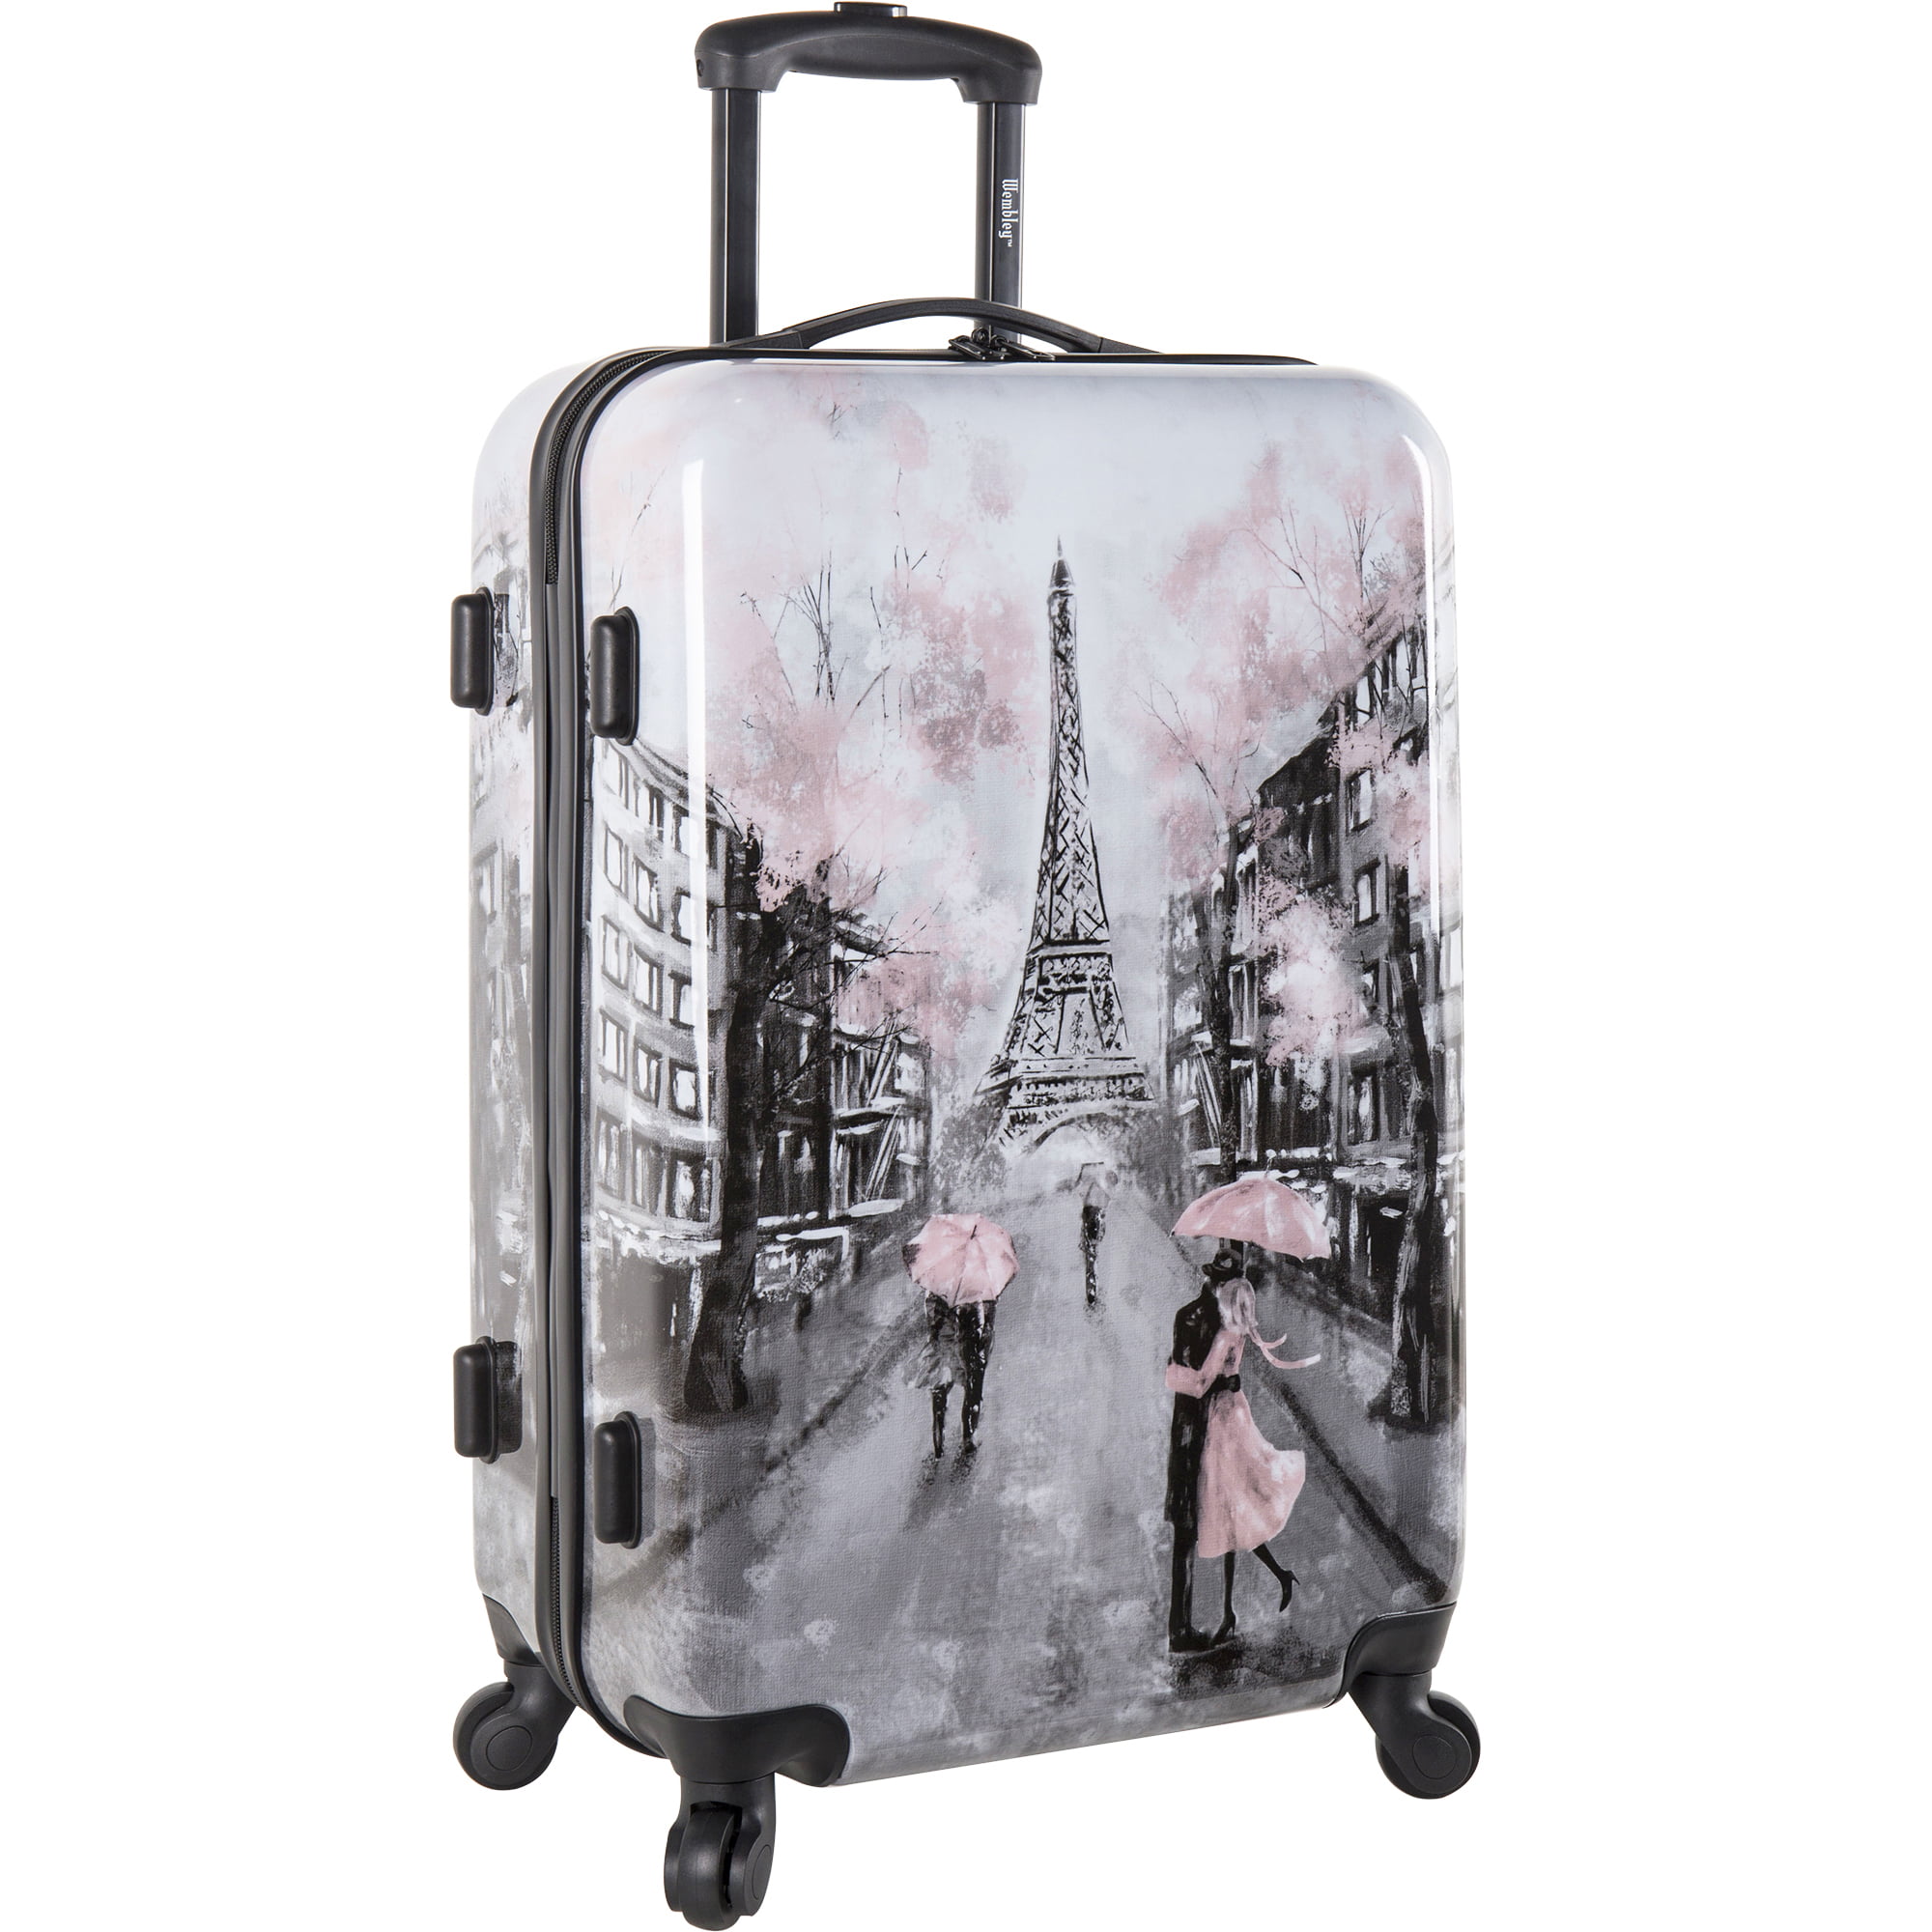 Wembley Hardside Spinner Luggage Suitcase 